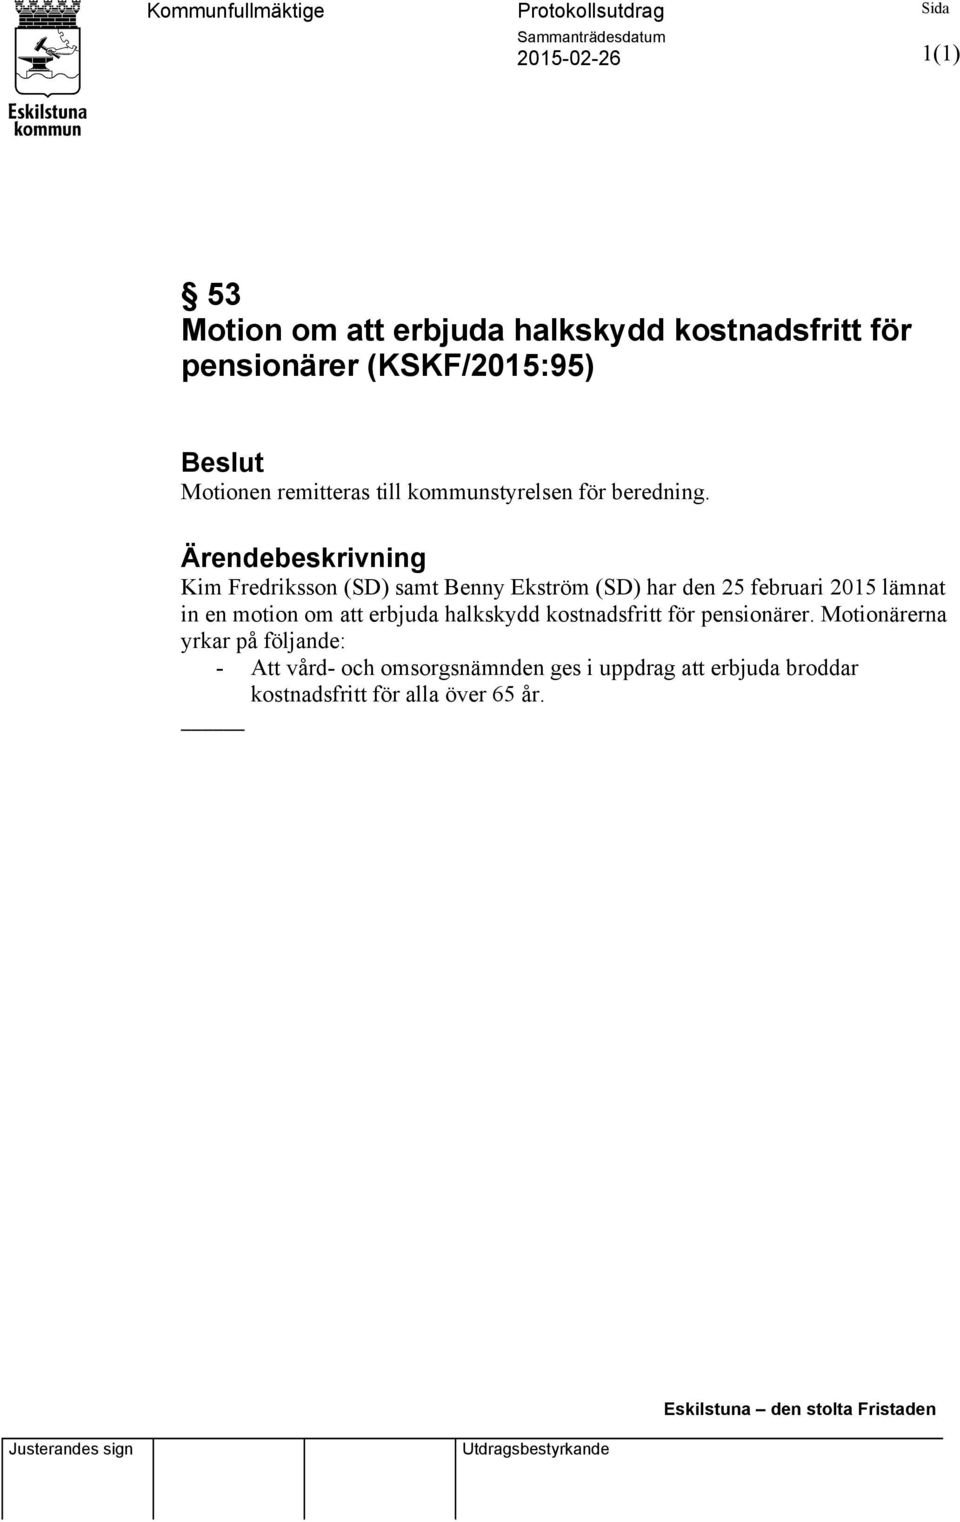 Ärendebeskrivning Kim Fredriksson (SD) samt Benny Ekström (SD) har den 25 februari 2015 lämnat in en motion om att erbjuda halkskydd